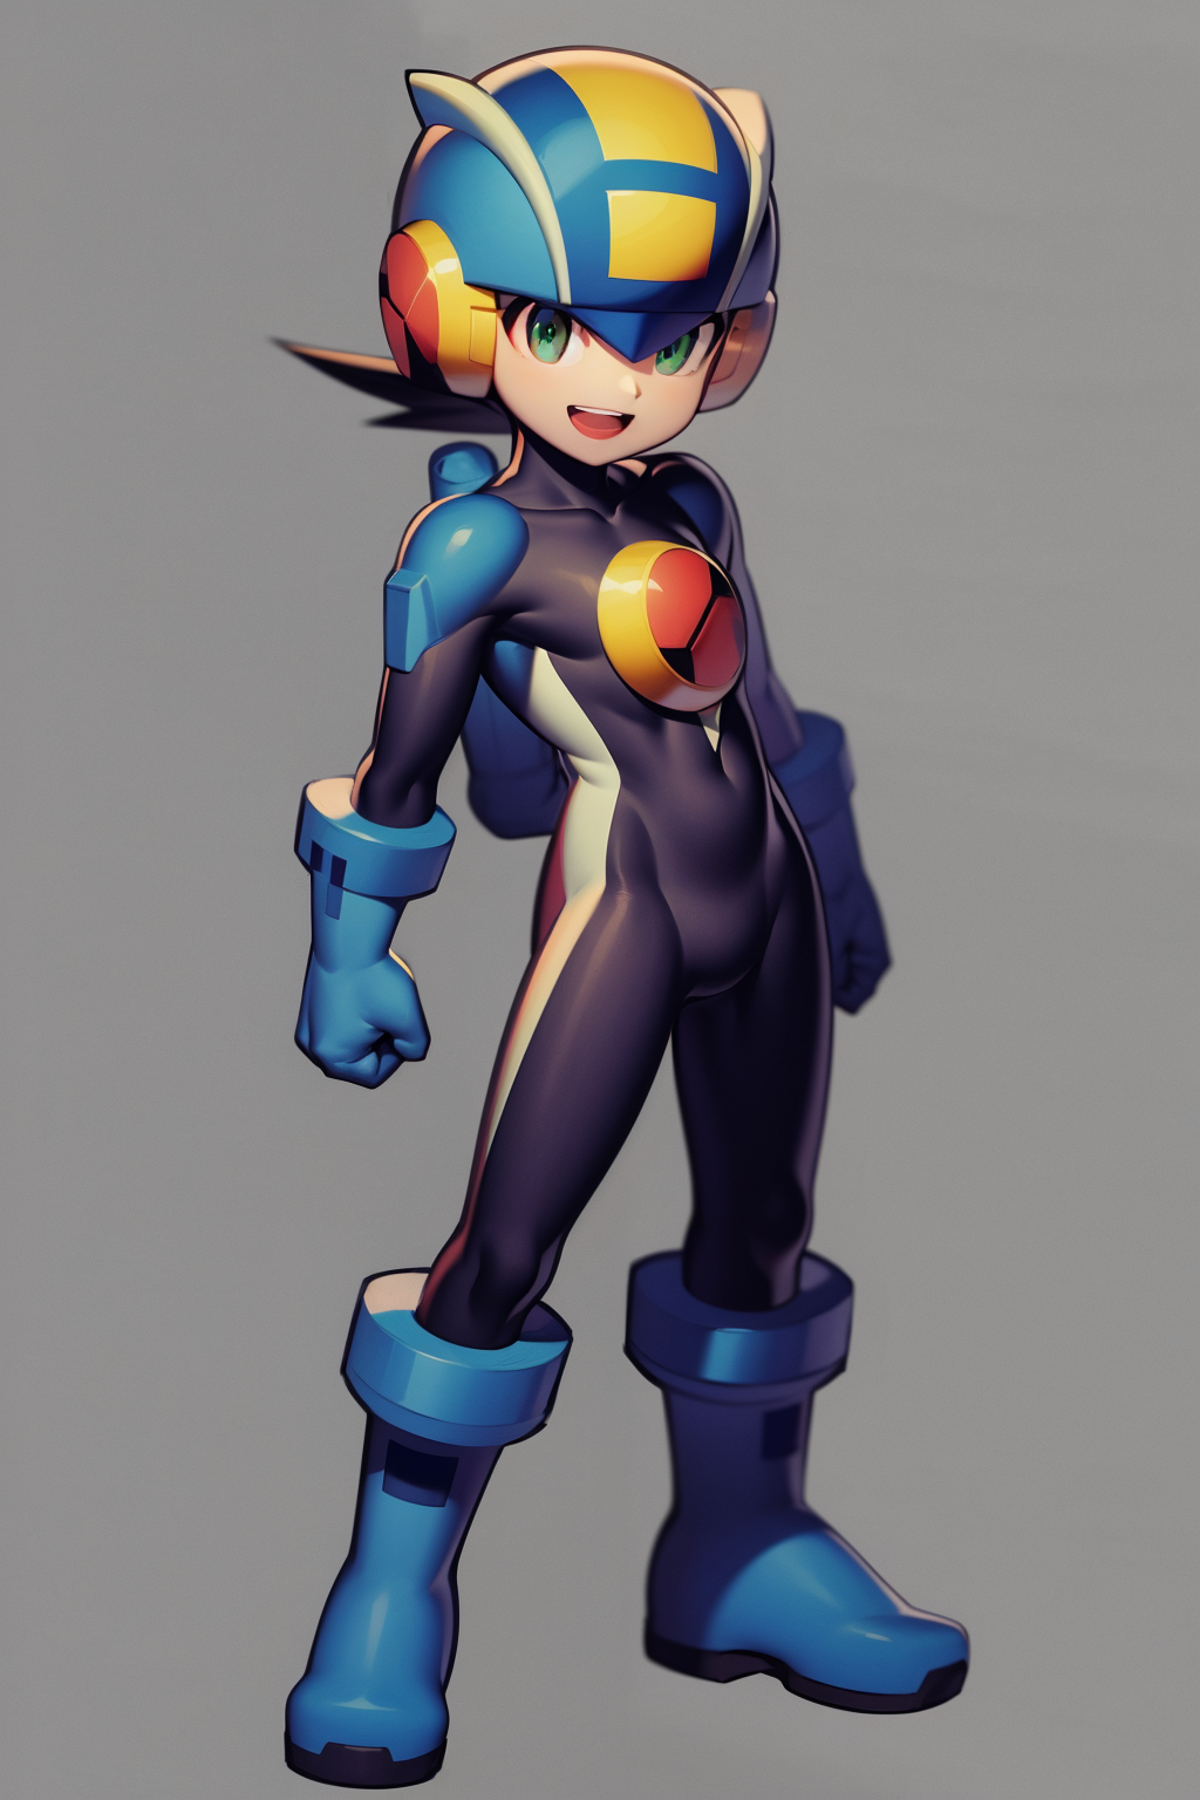 Megaman - MegaMan NT Warrior - Character LORA image by Konan